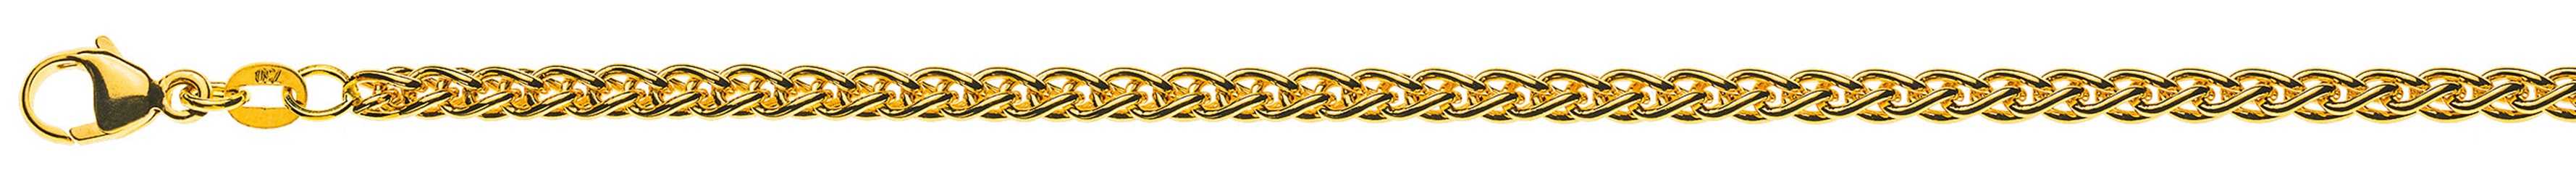 AURONOS Prestige Halskette Gelbgold 18K Zopfkette 55cm 3.3mm